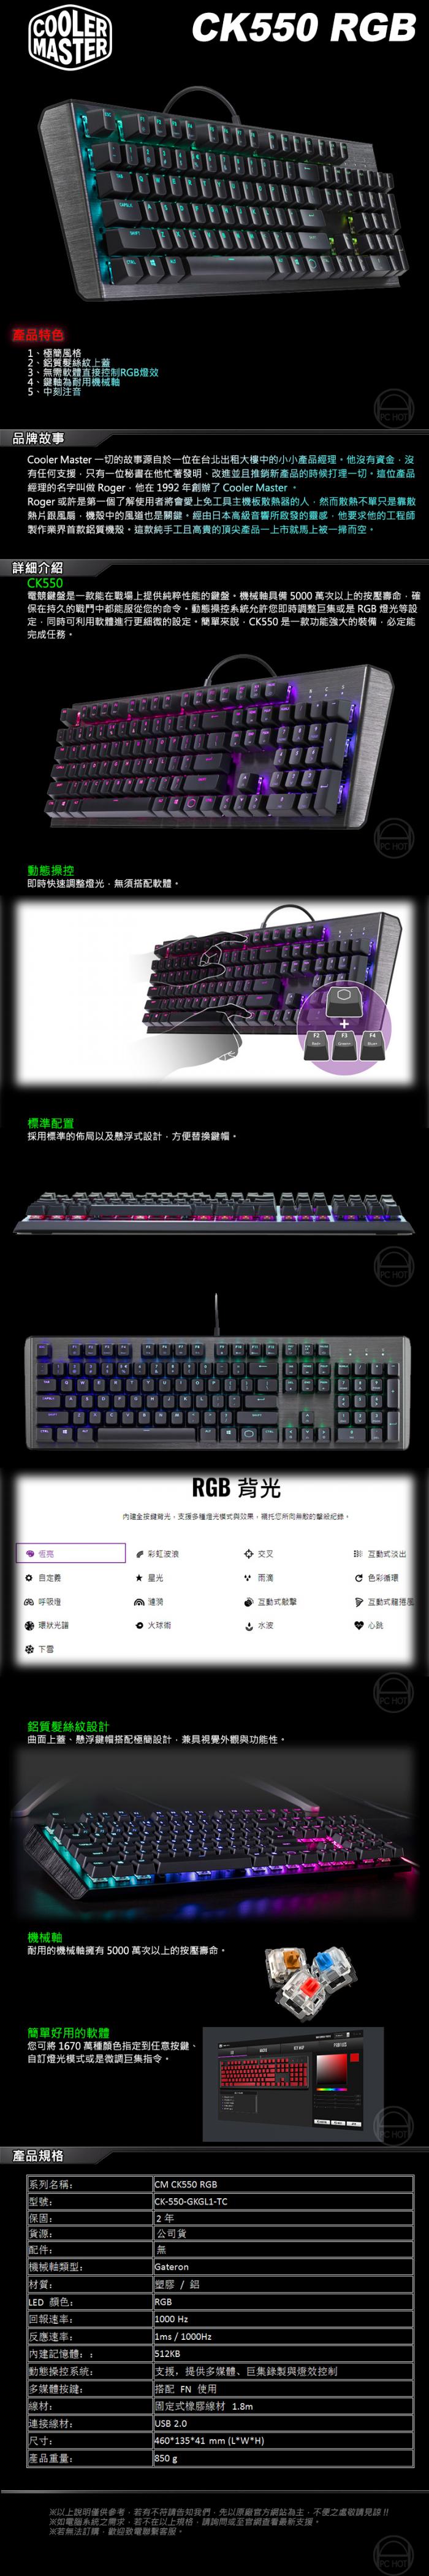 酷碼 CK550 青軸 RGB 機械式鍵盤 送手靠墊